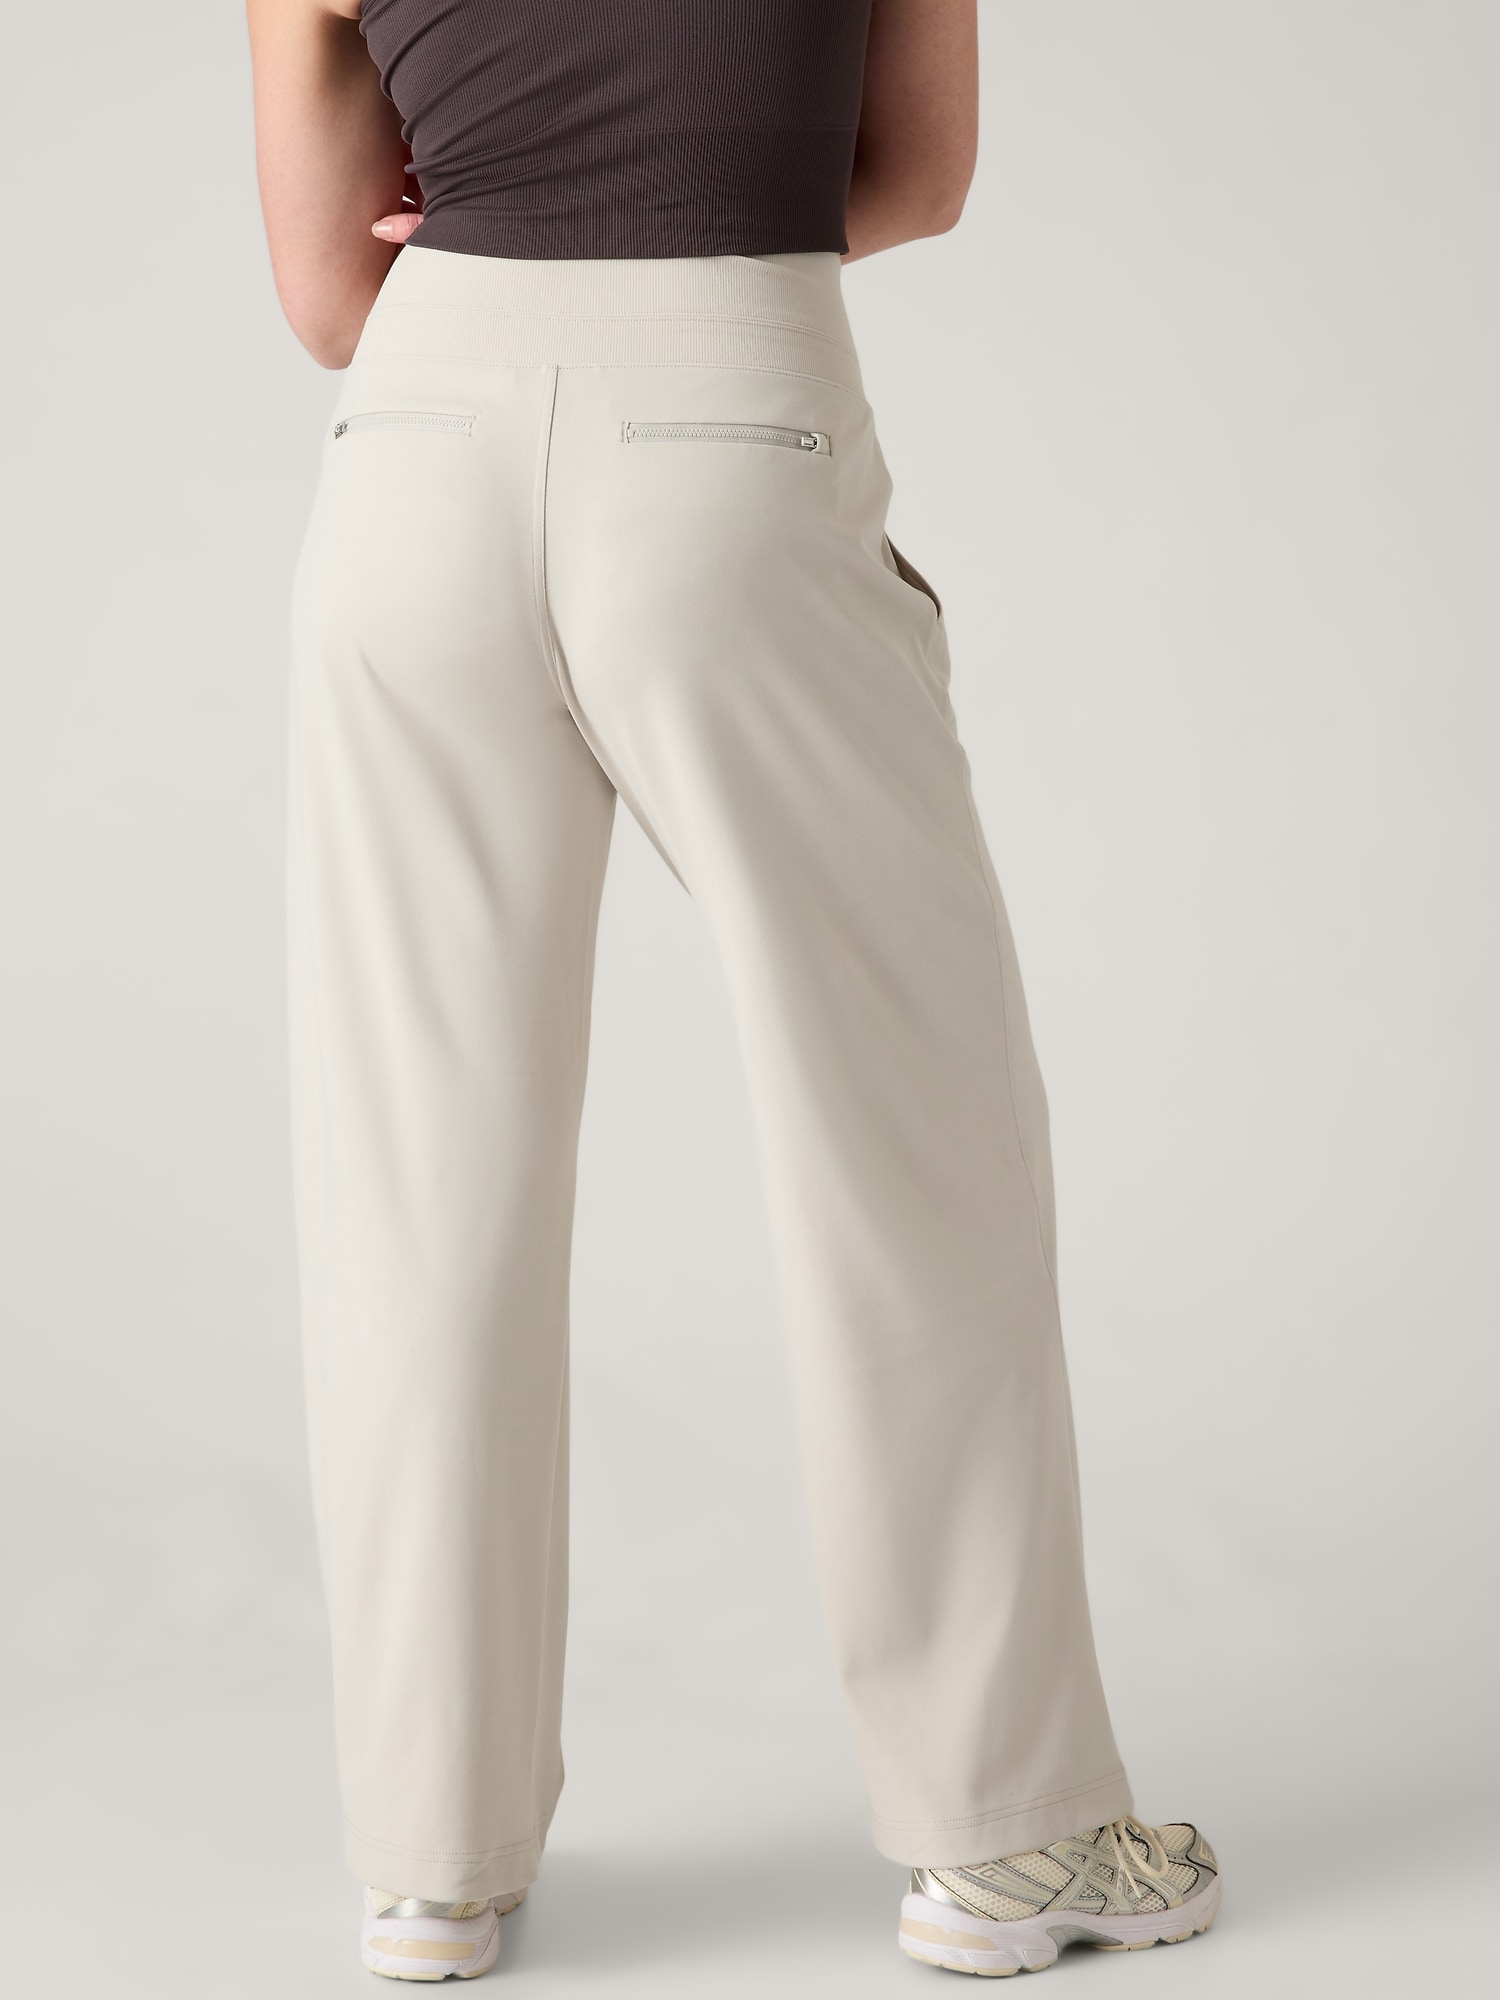 Wide-leg Drawstring Cotton Stretch Knit Pants, Pant